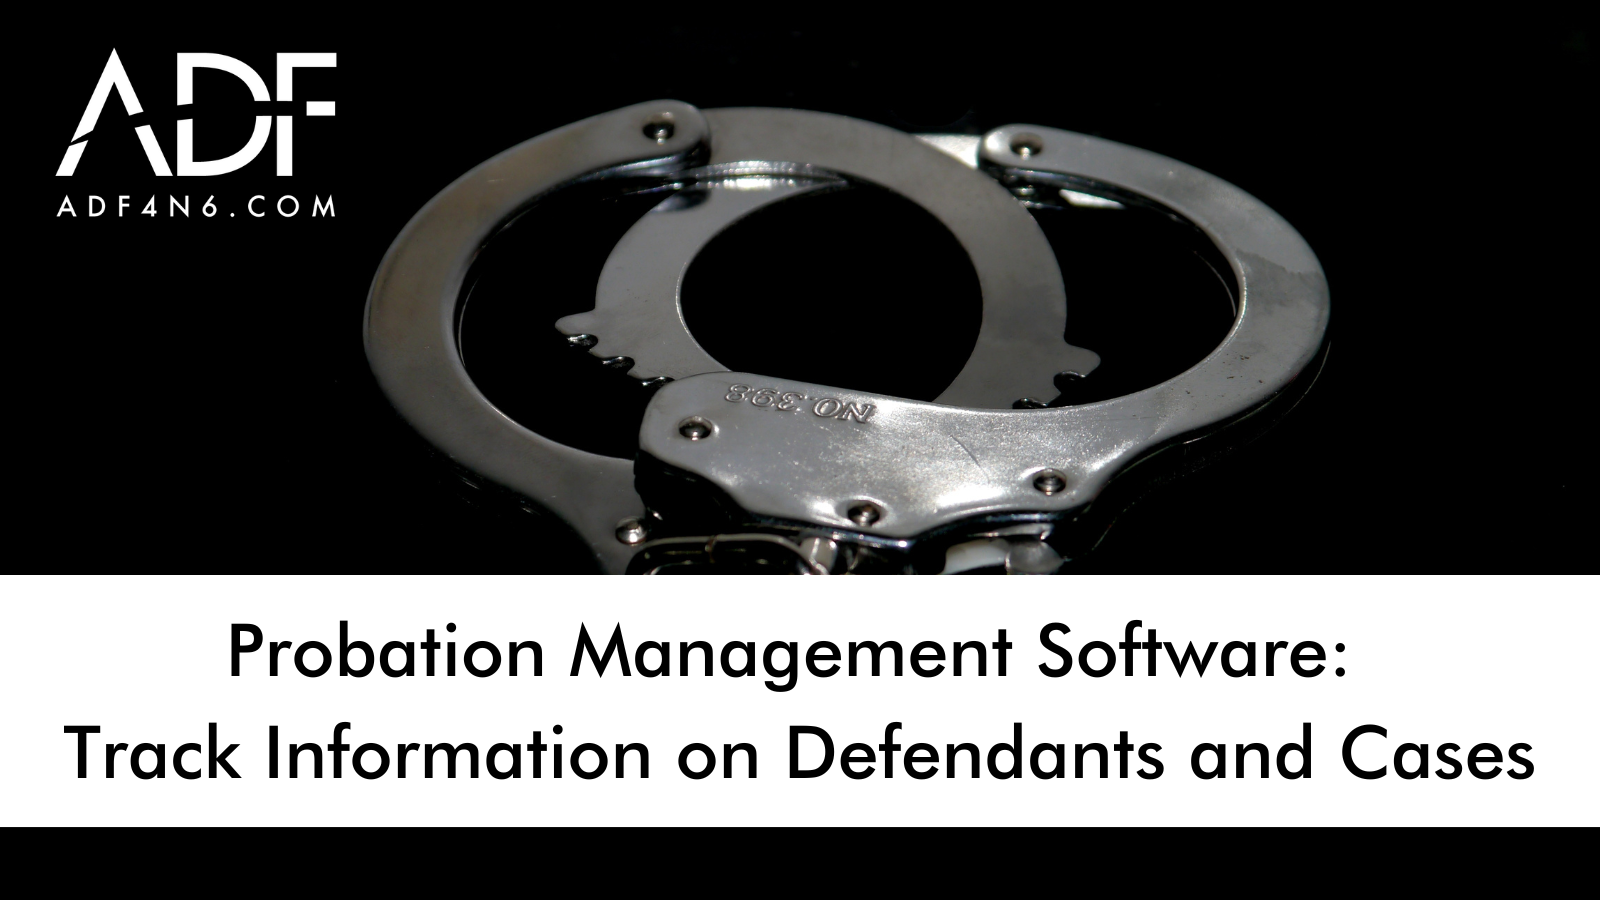 Probation Management Software: Track Information on Defendants and Cases